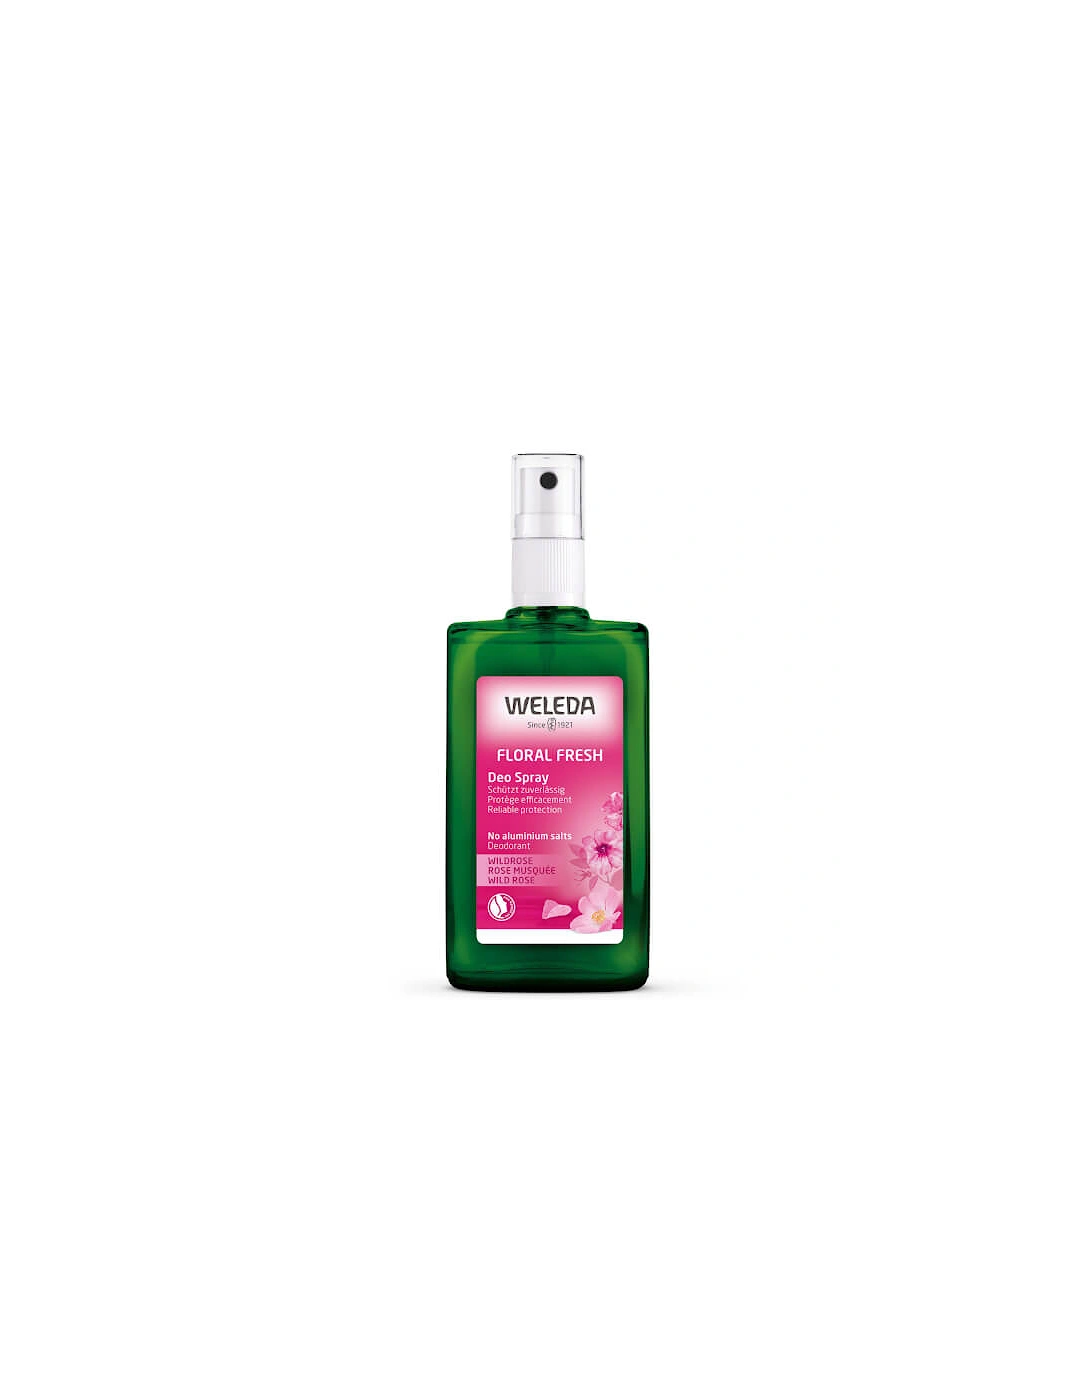 Floral Fresh Deodorant Spray 100ml - Weleda, 2 of 1